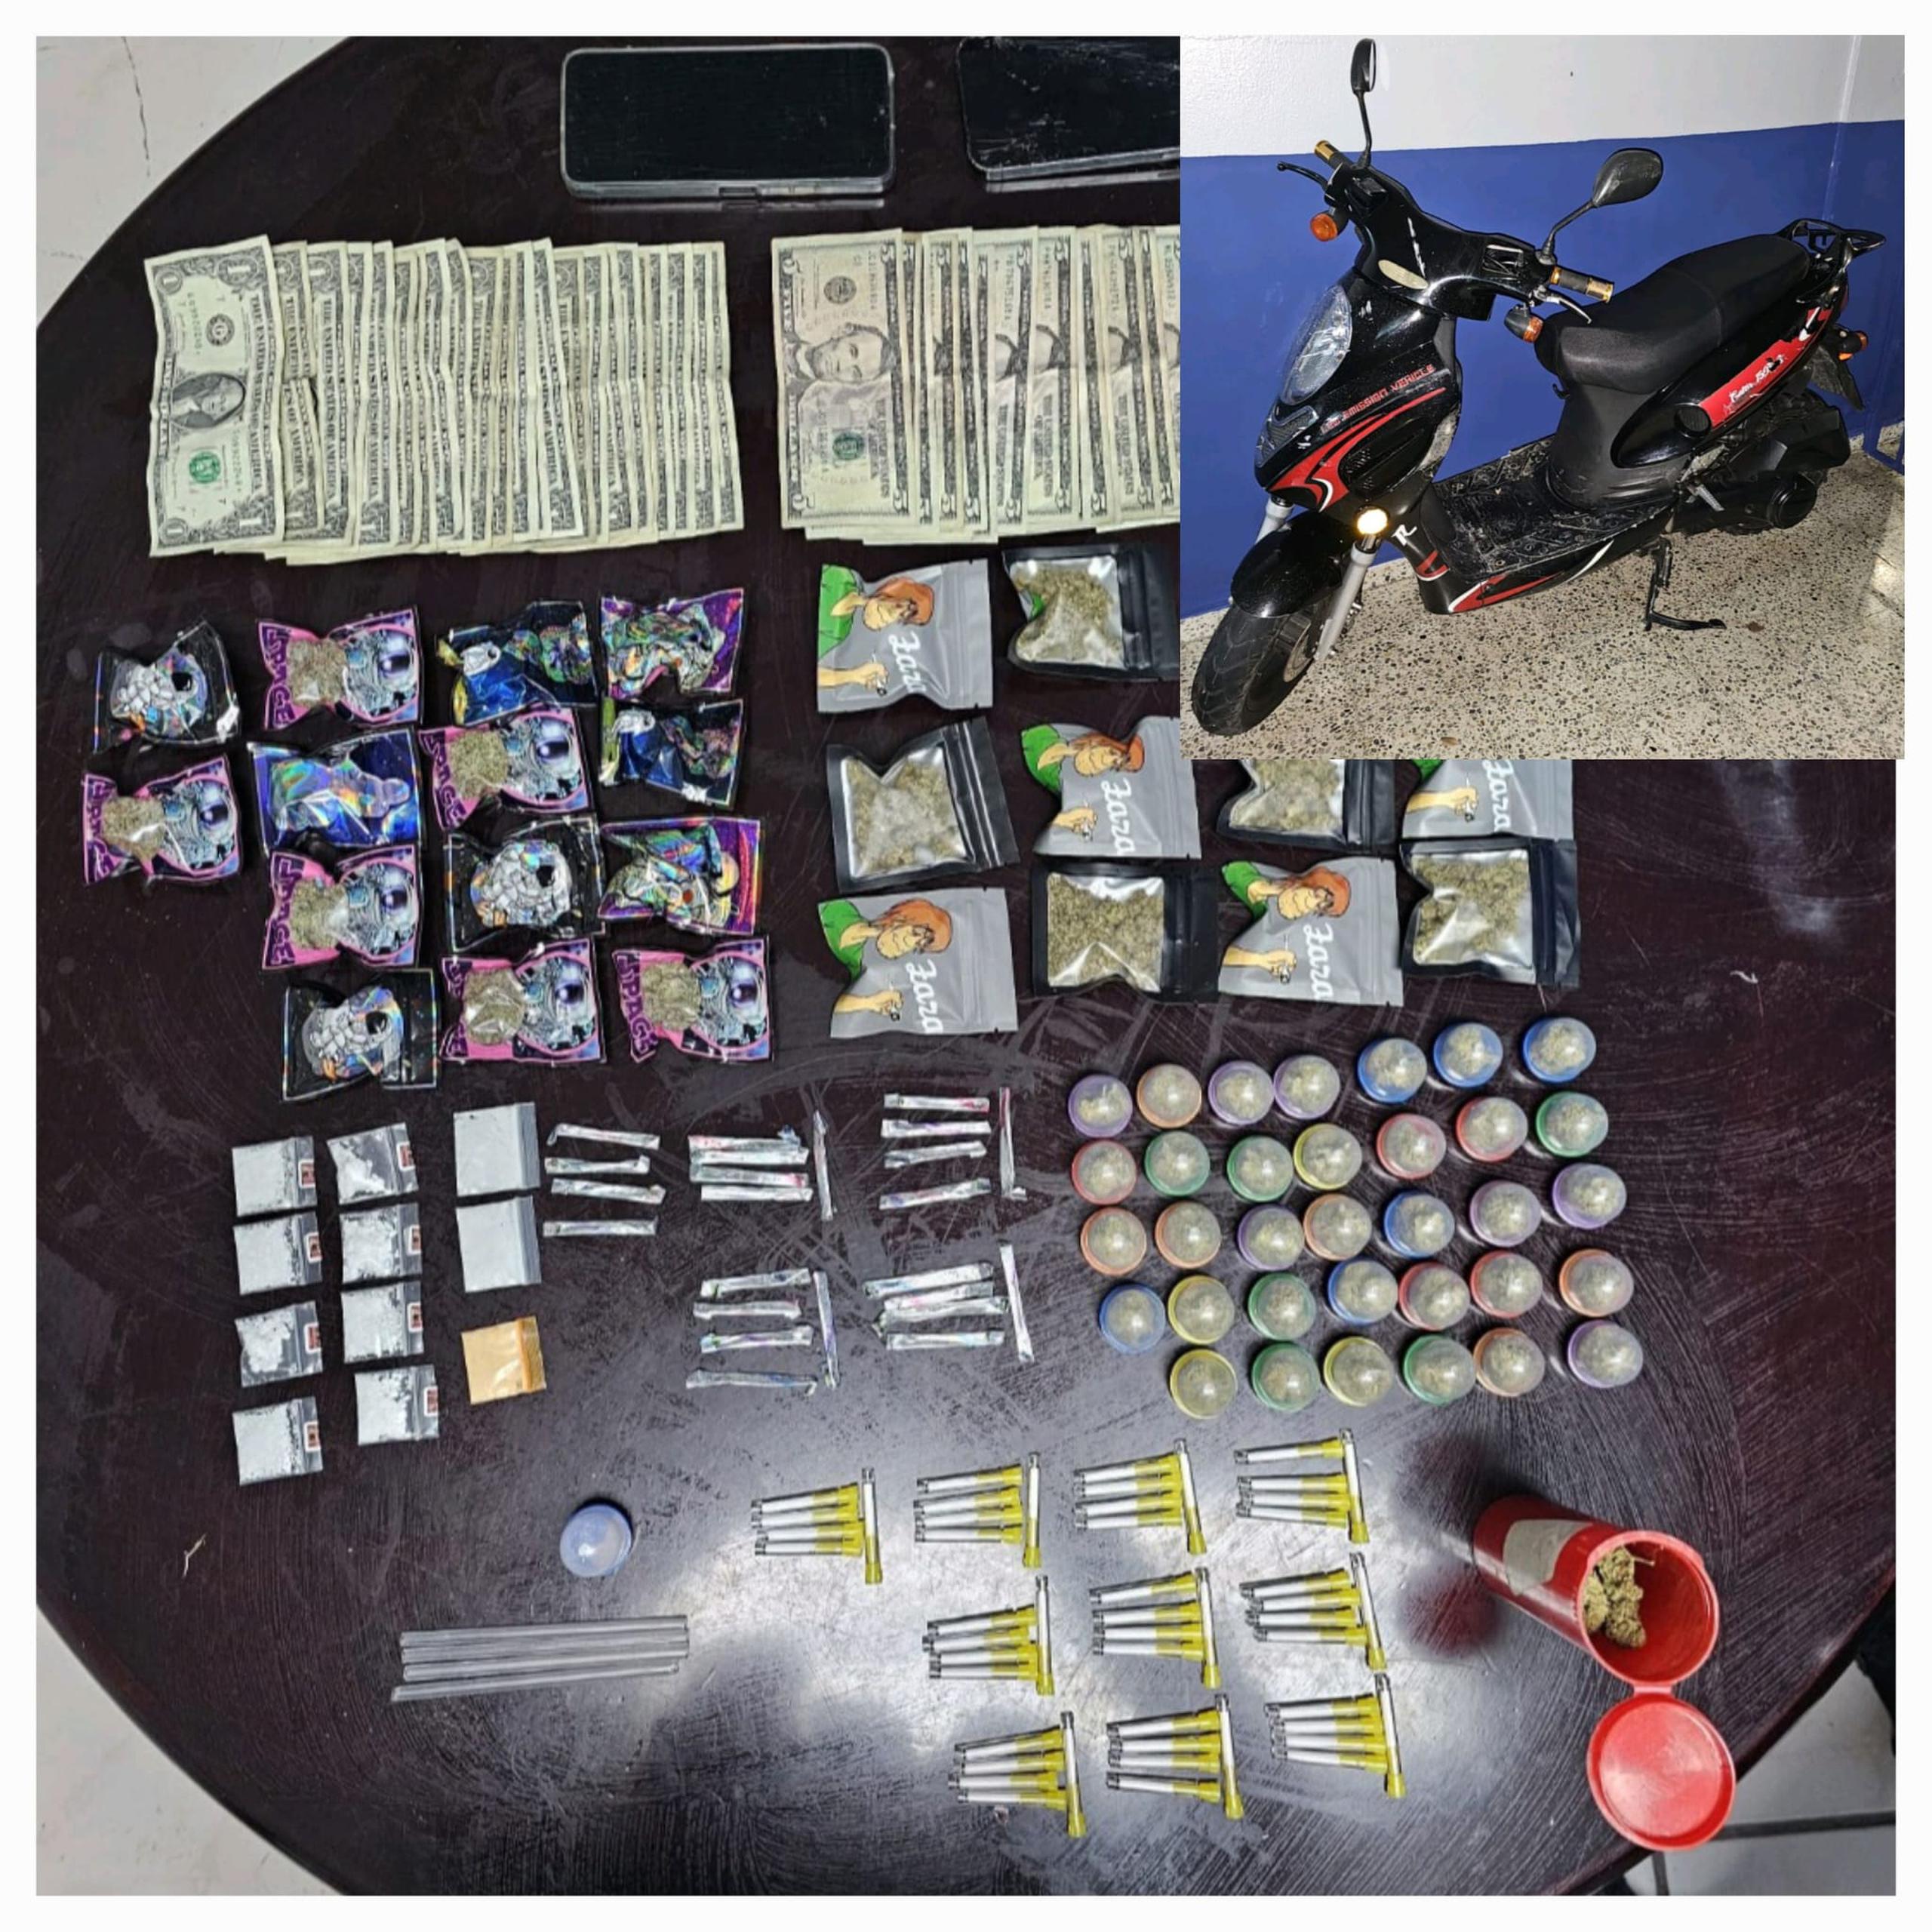 Un motociclista fue arrestado en el barrio Ingenio en Toa Baja y se le ocupó sustancias controladas y dinero en efectivo.